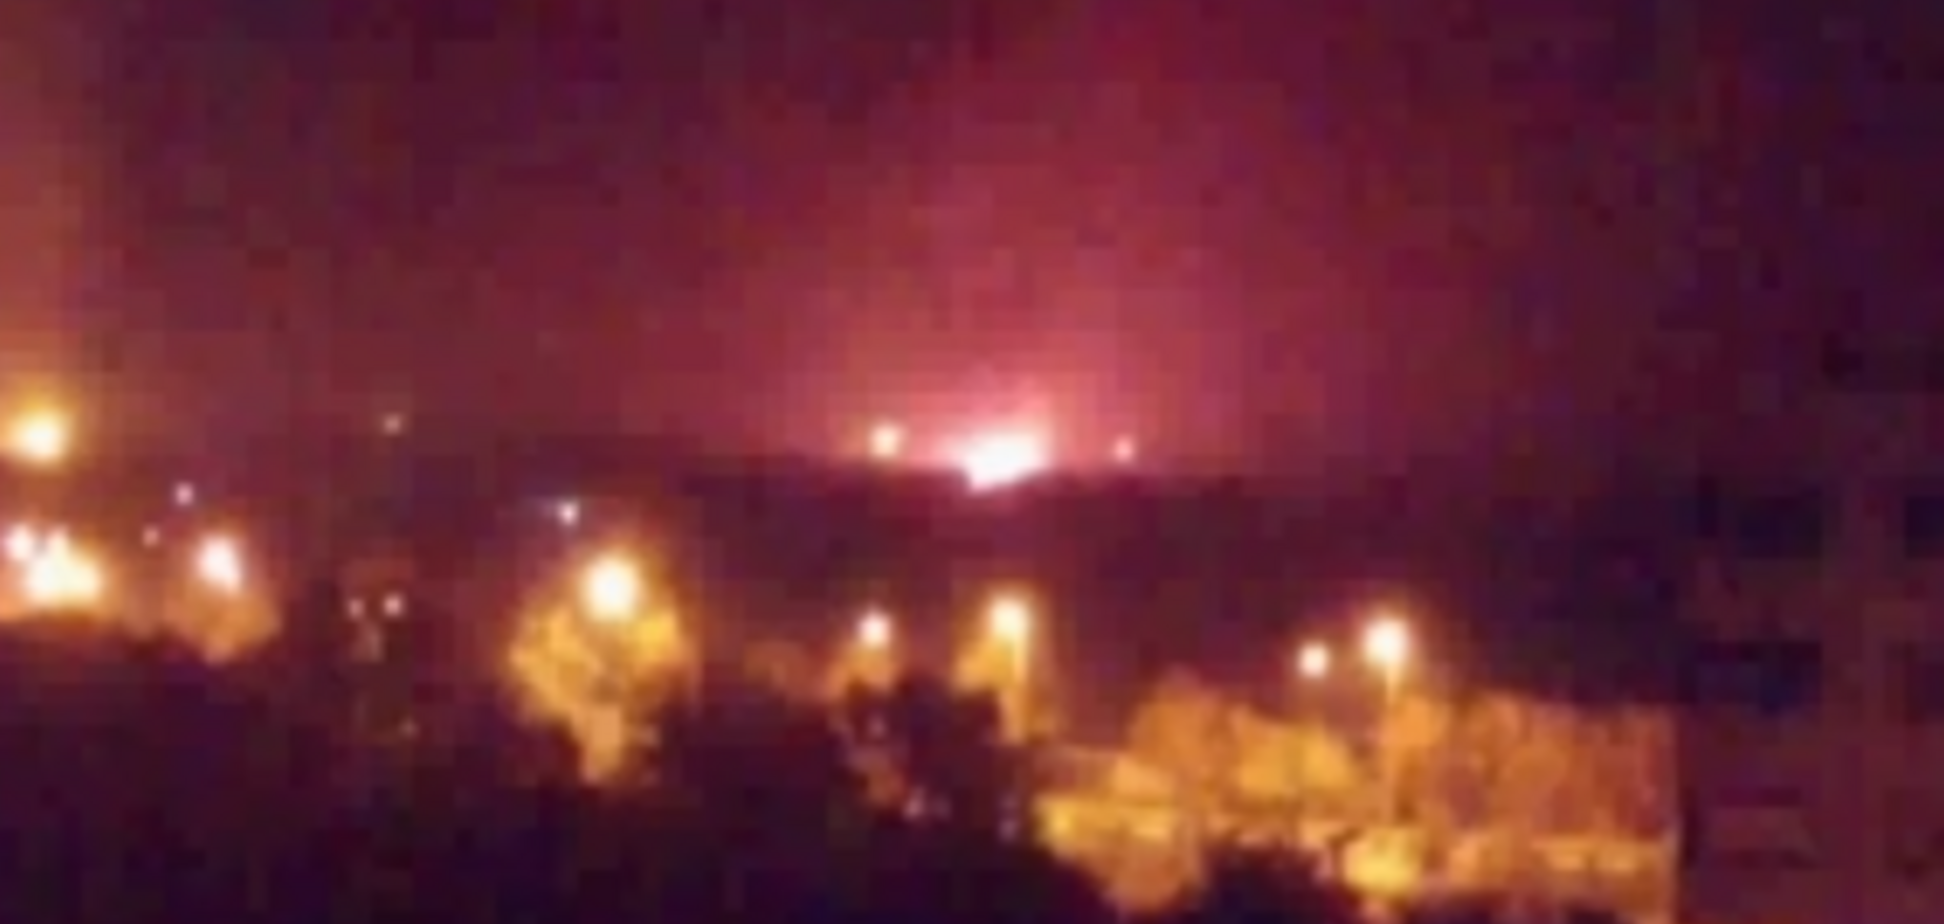 Донецький аеропорт загорівся після вибухів: відео пожежі